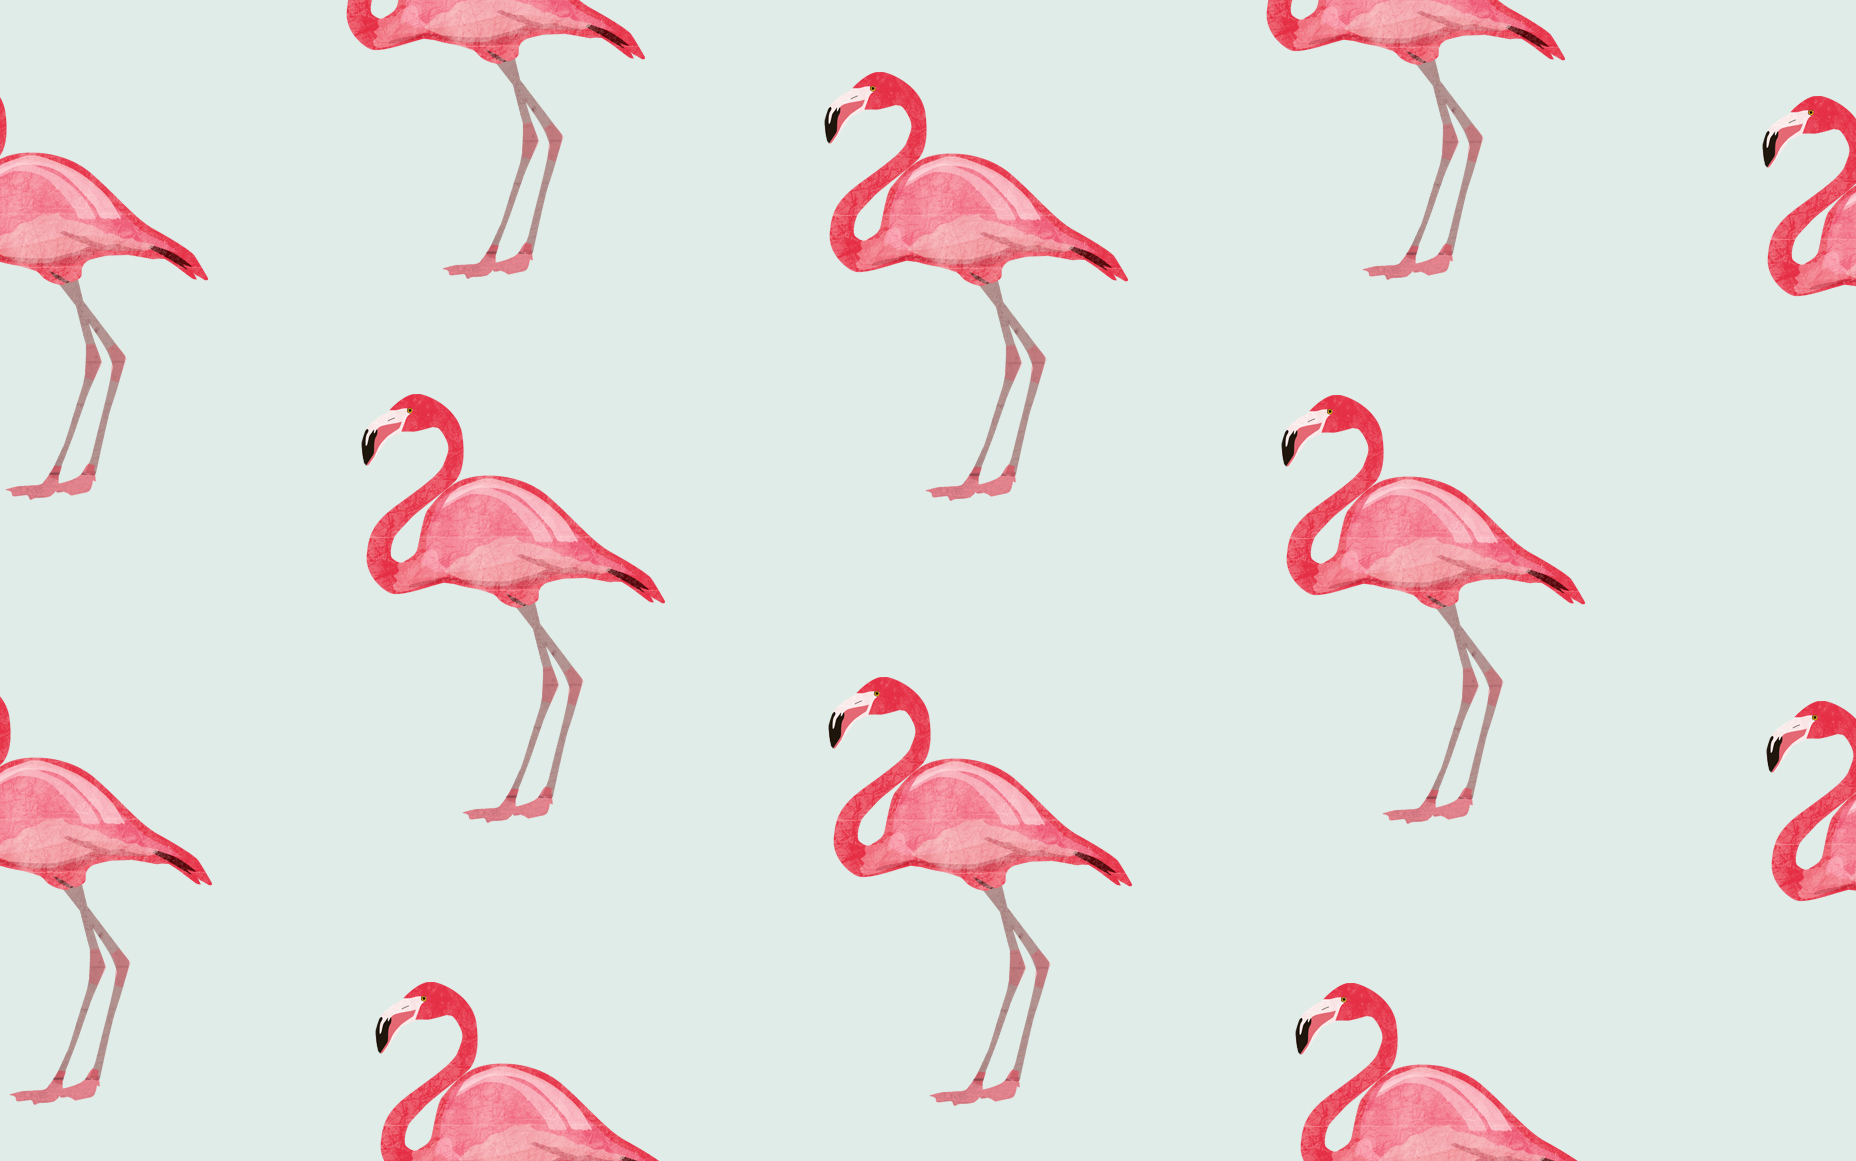 47+] Flamingo Wallpaper for Computer - WallpaperSafari